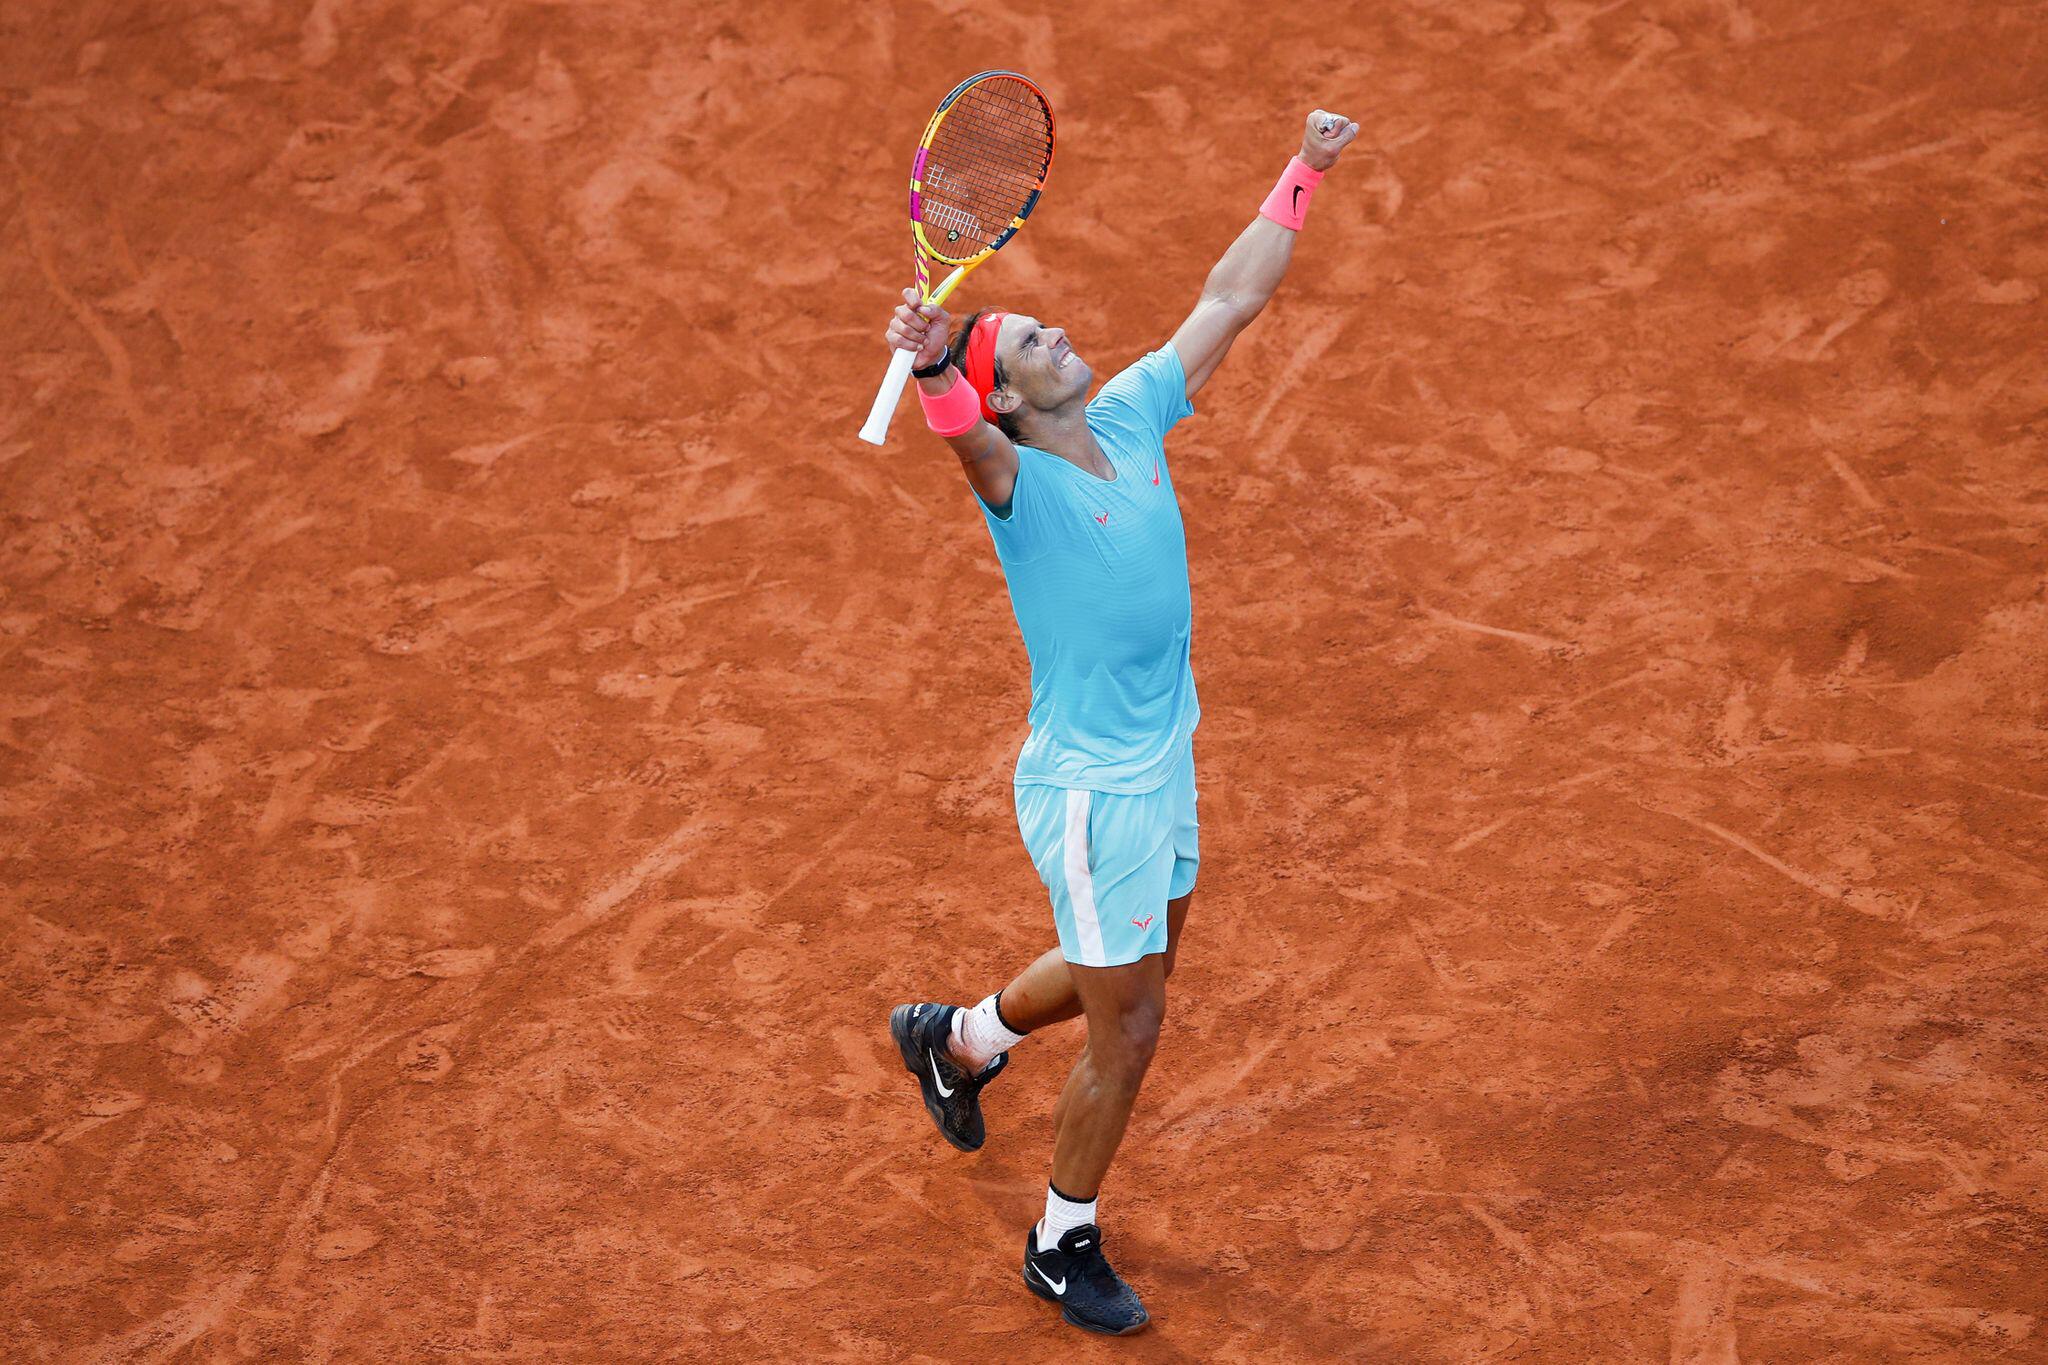 Gigantengipfel in Paris Djokovic fordert Nadal im FrenchOpenFinale